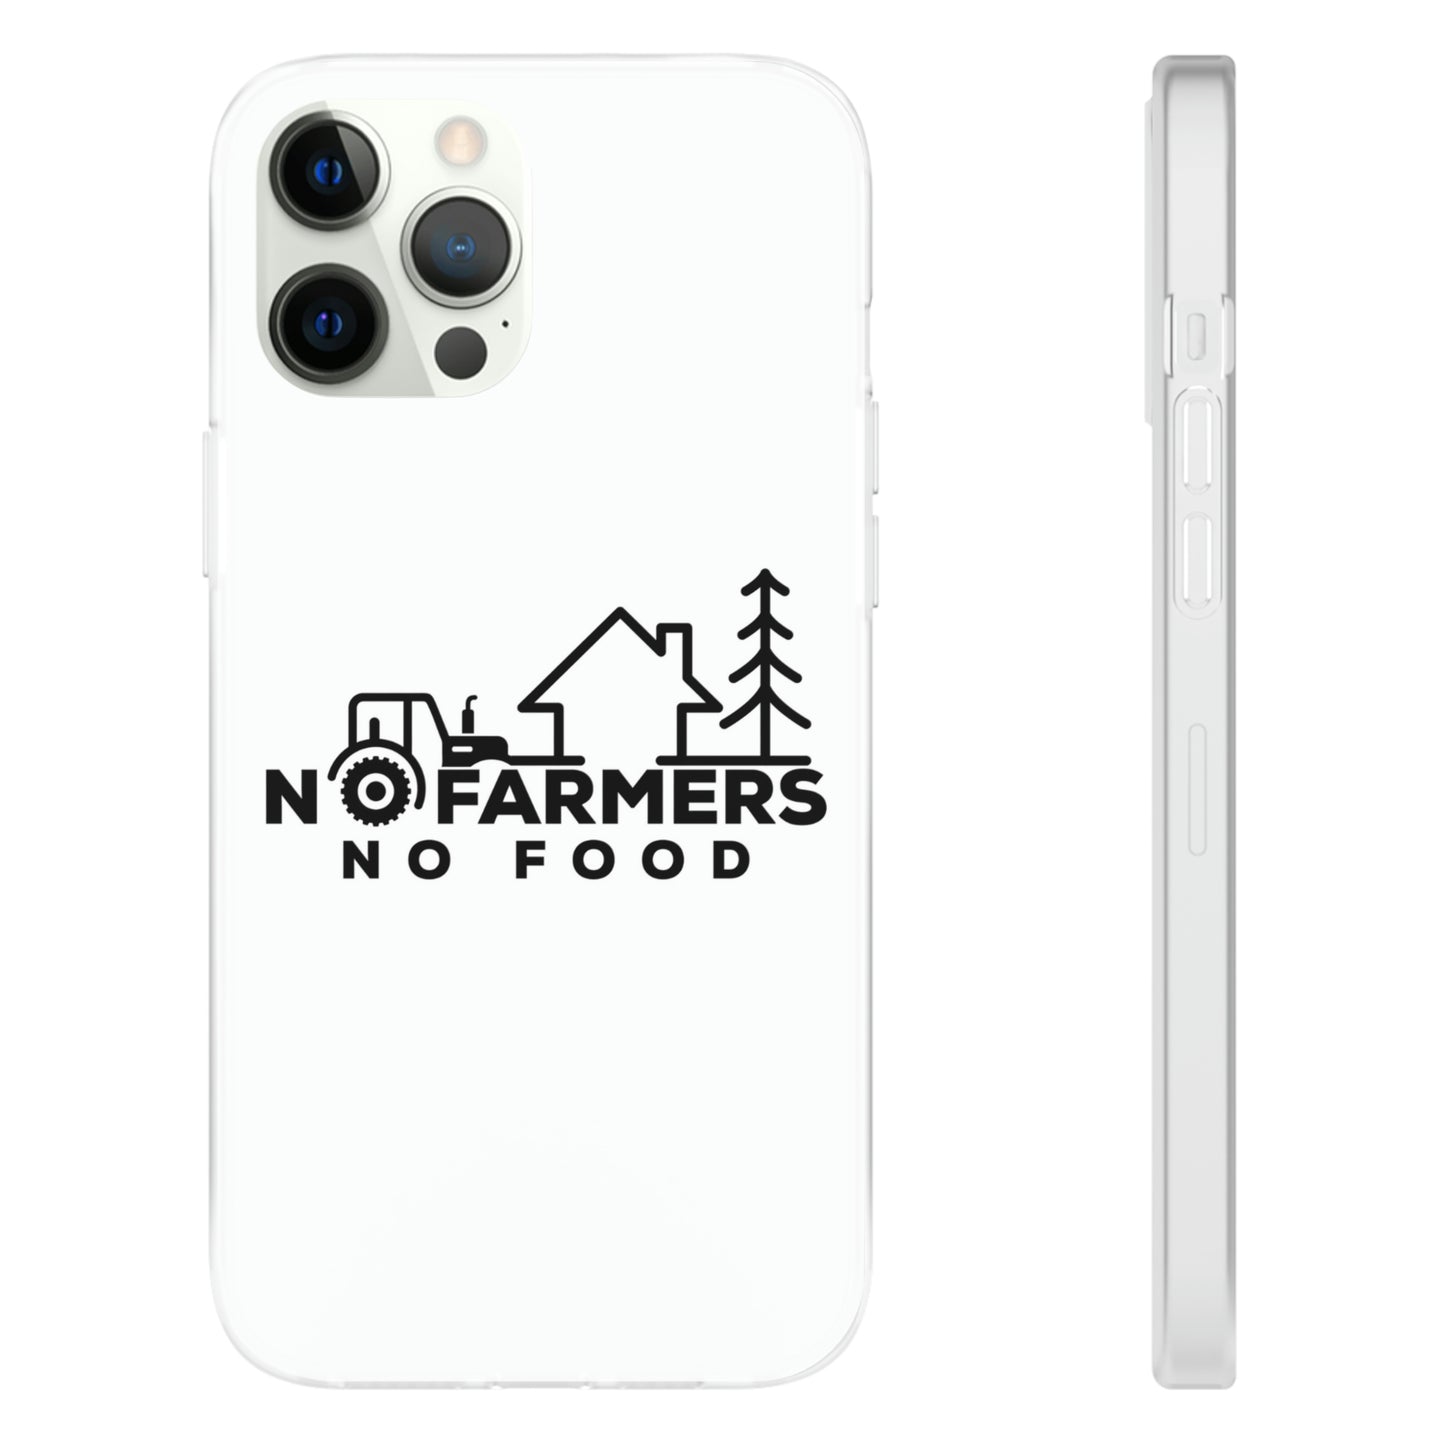 No Farmers No Food - iPhone